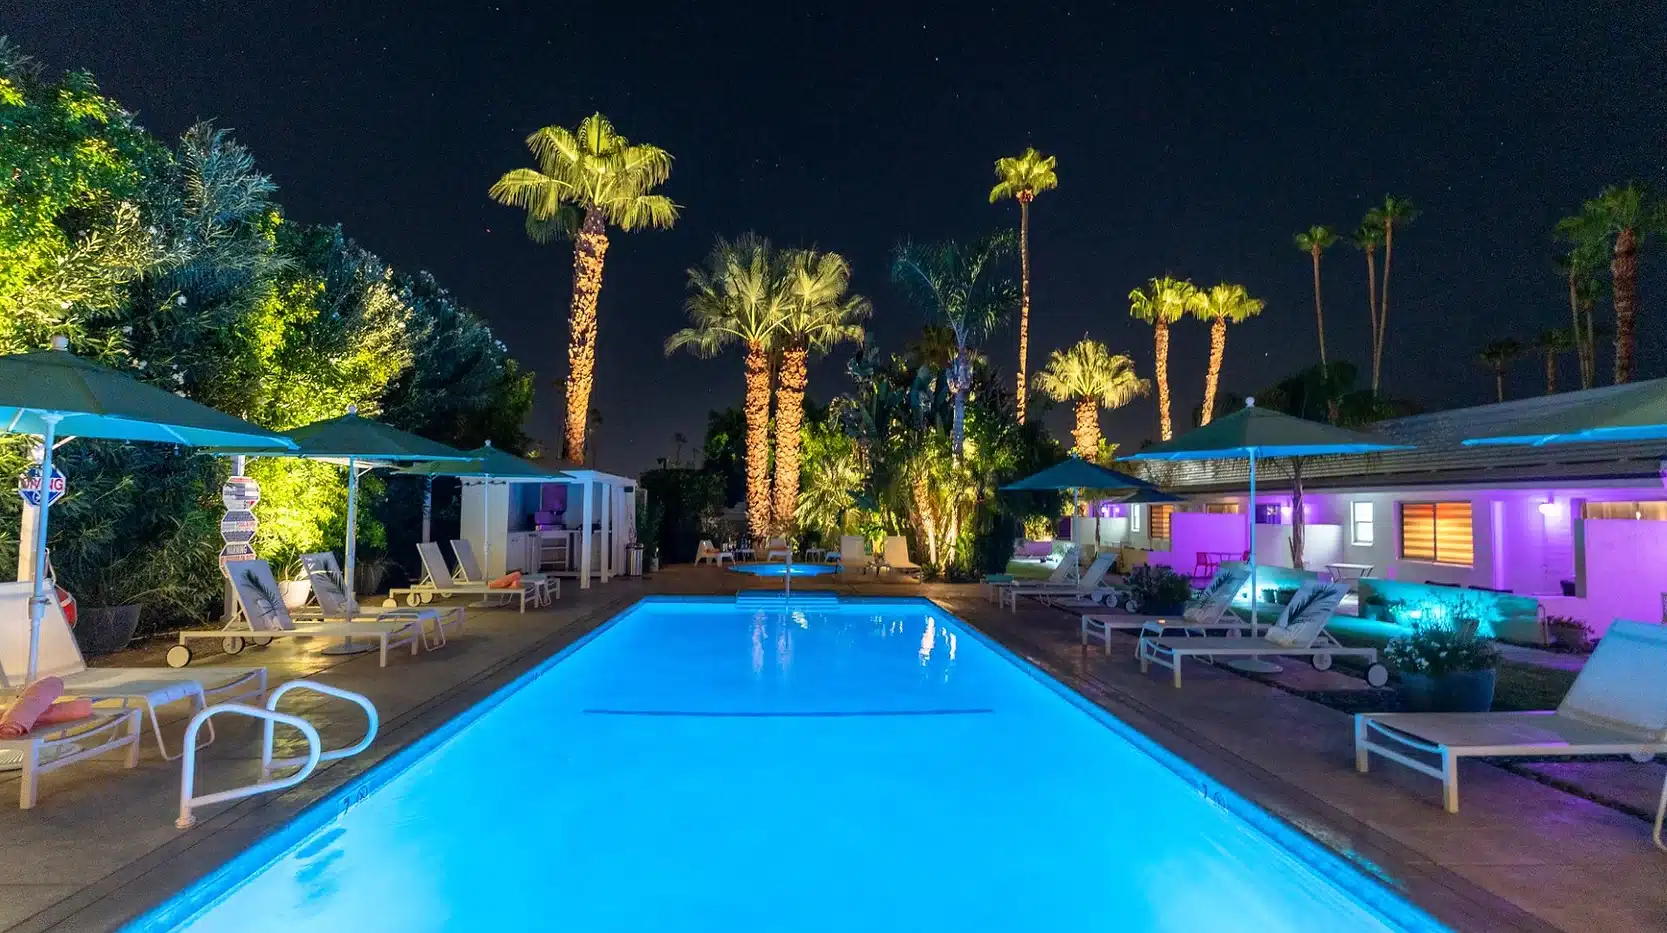 Bellevue Oasis night pool. 